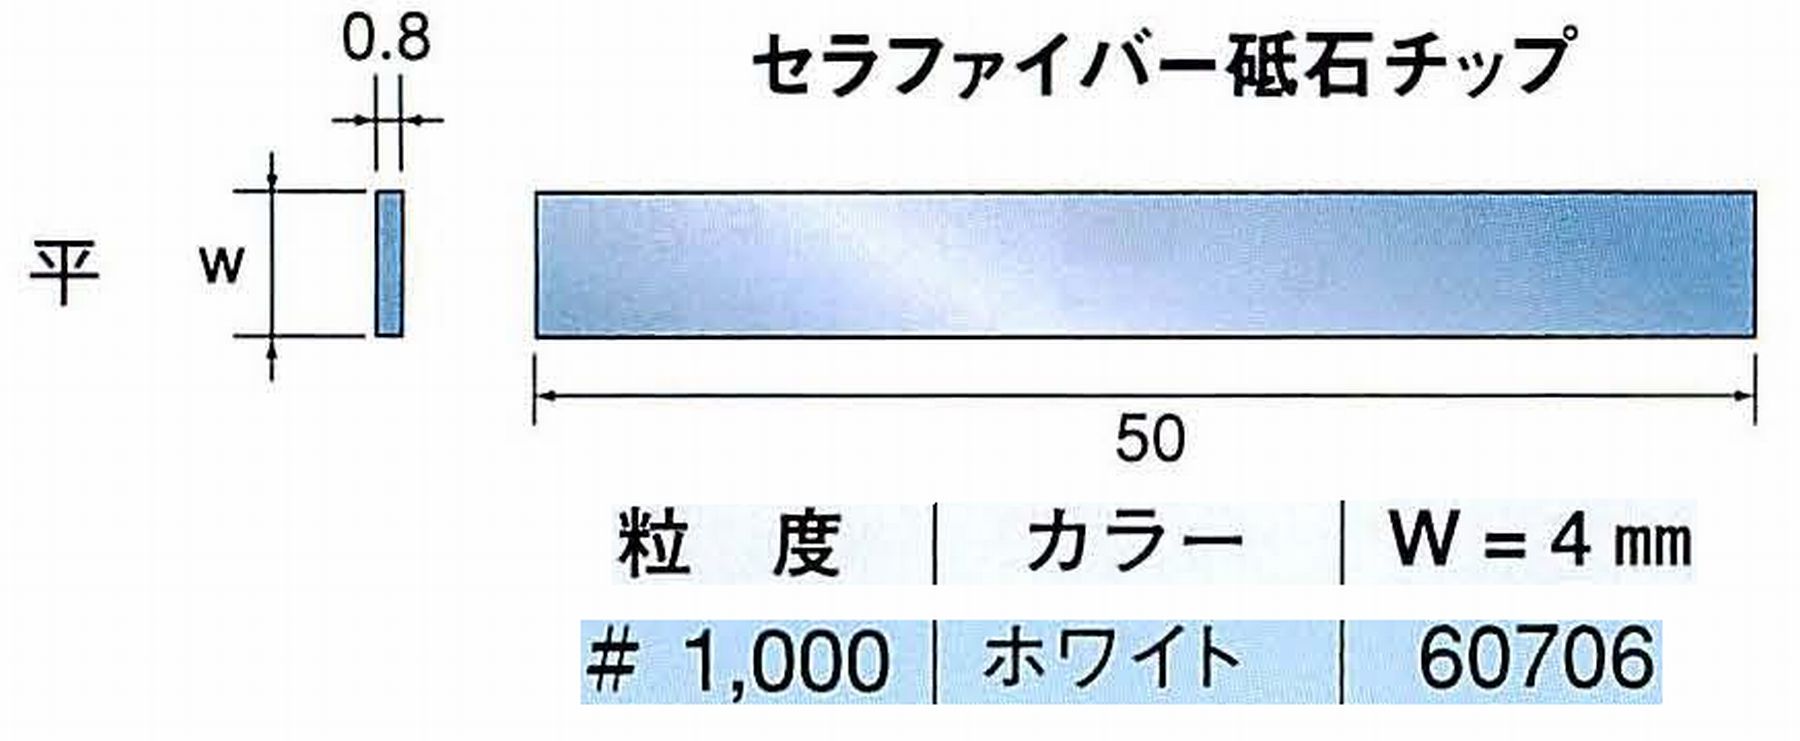 ナカニシ/NAKANISHI 超音波研磨装置 シーナスneo/シーナス専用工具 セラファイバー砥石チップ 平 60706